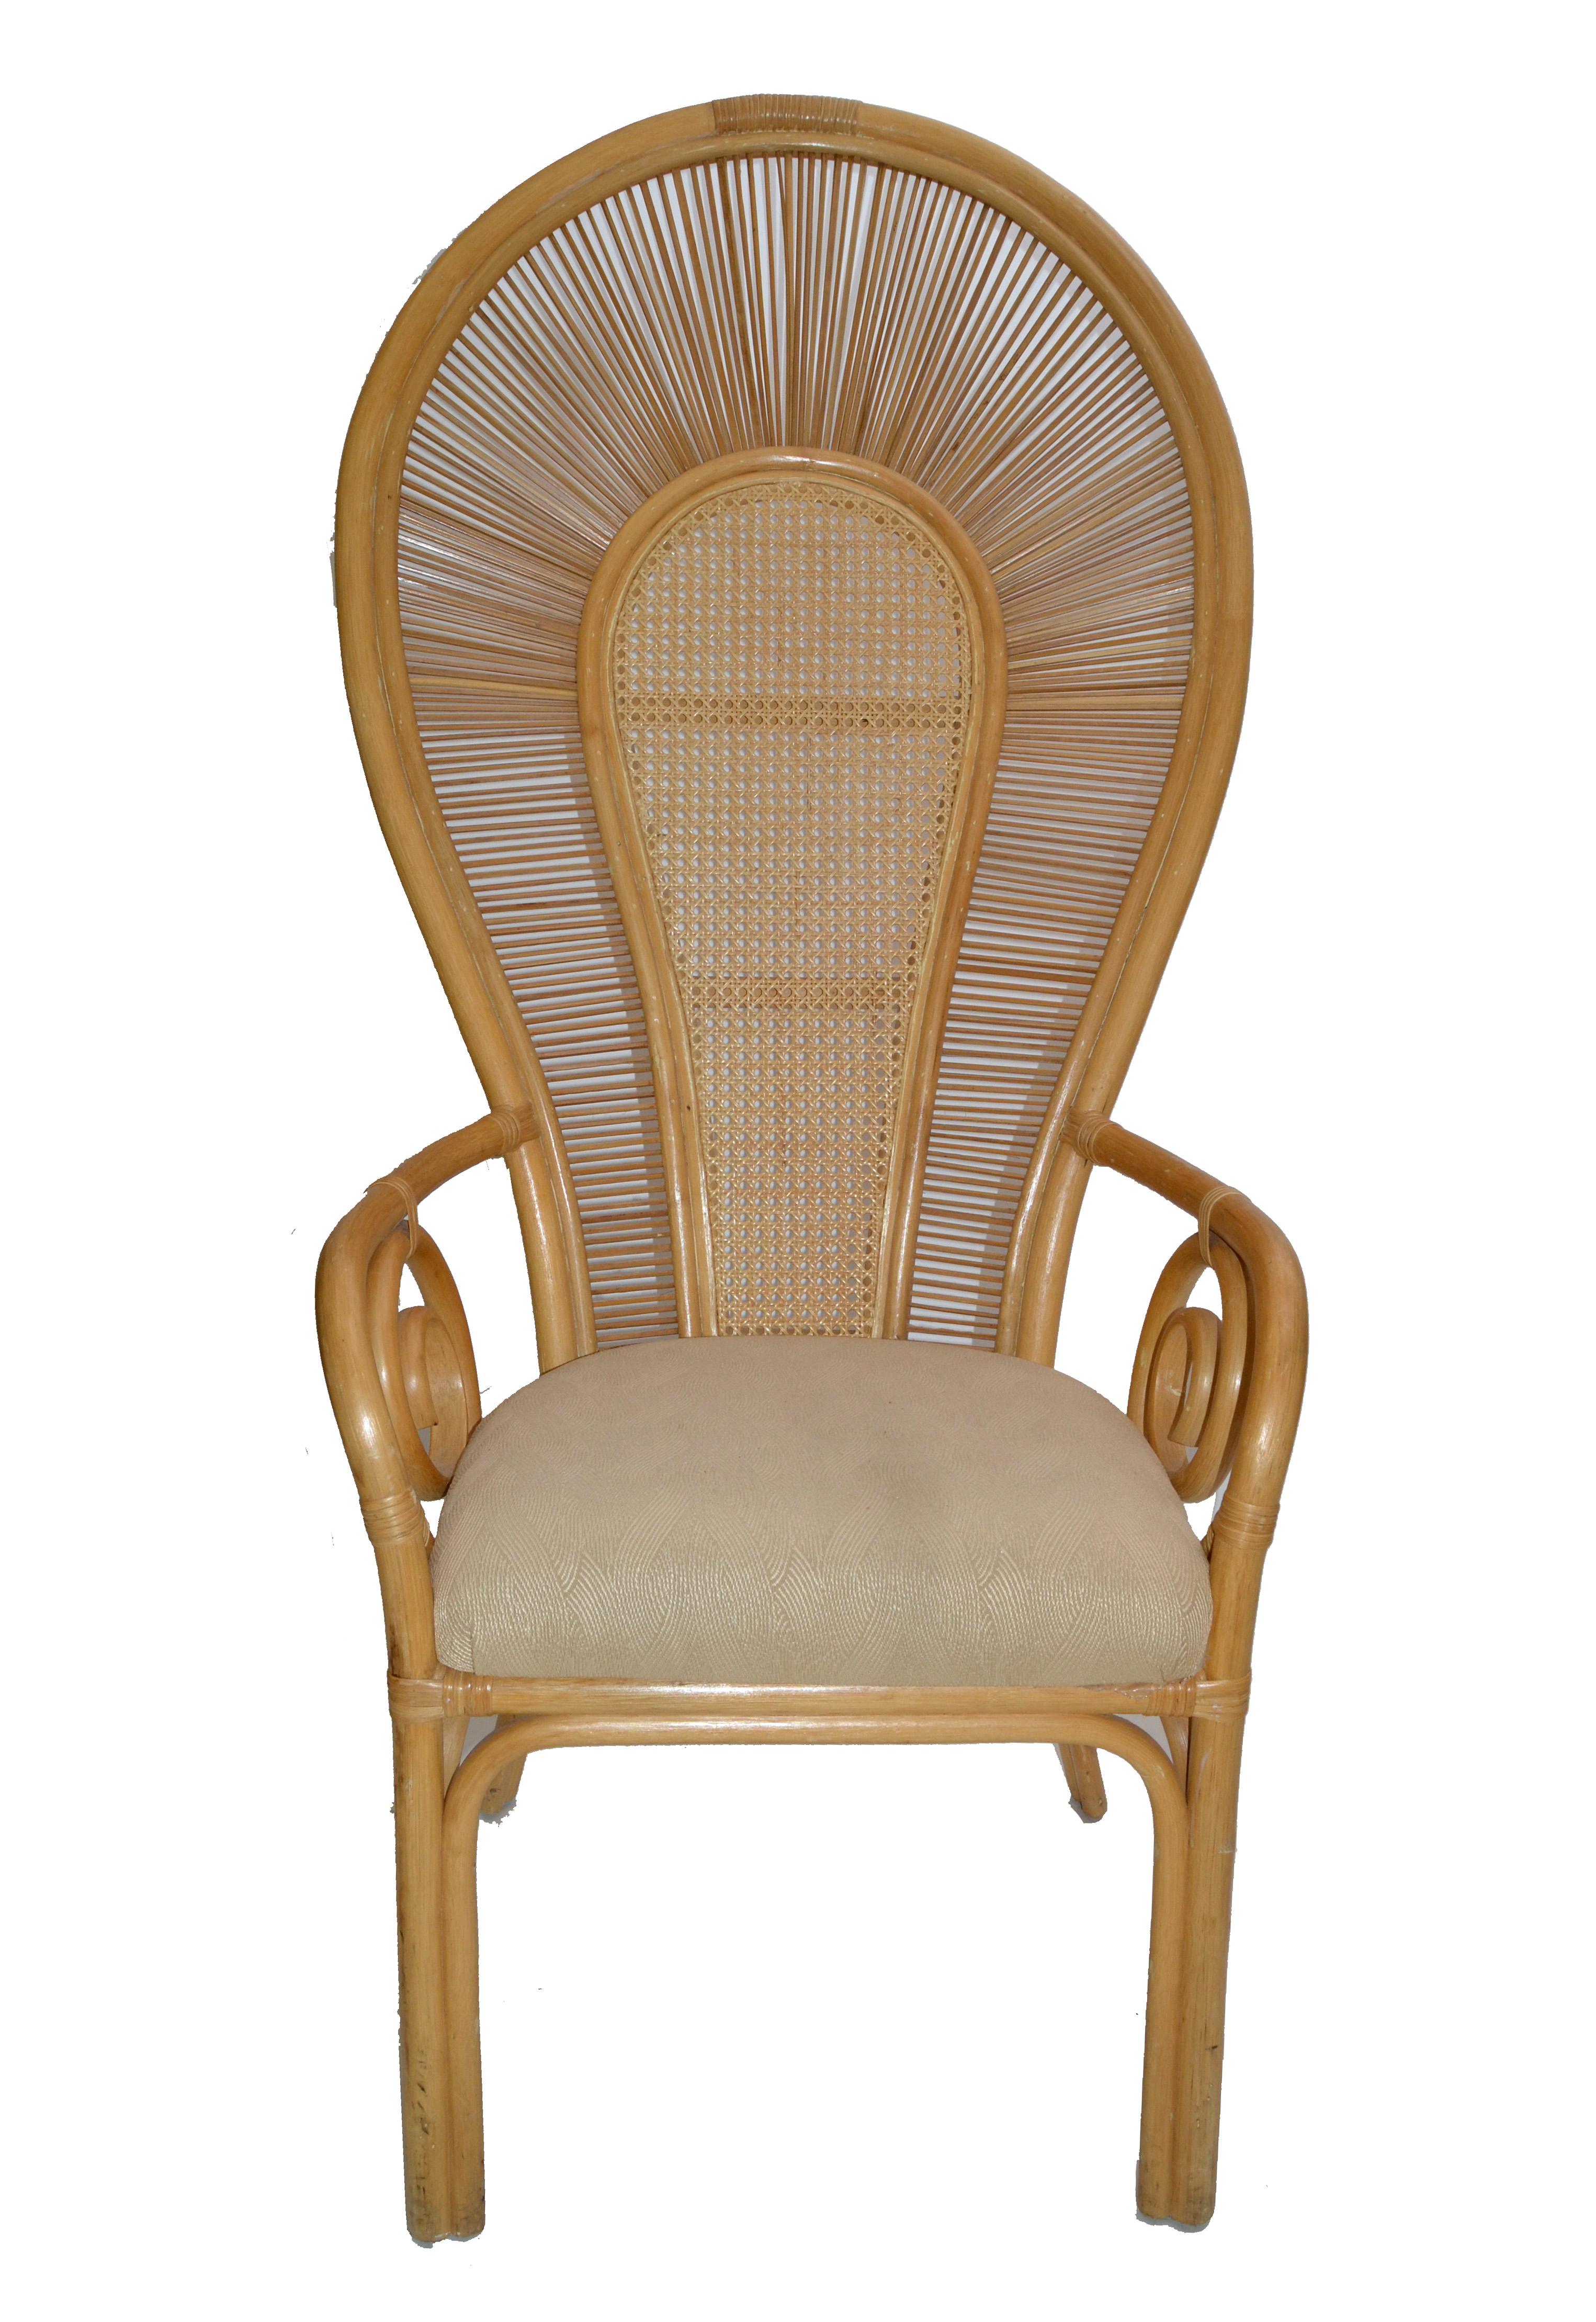 80s wicker chair